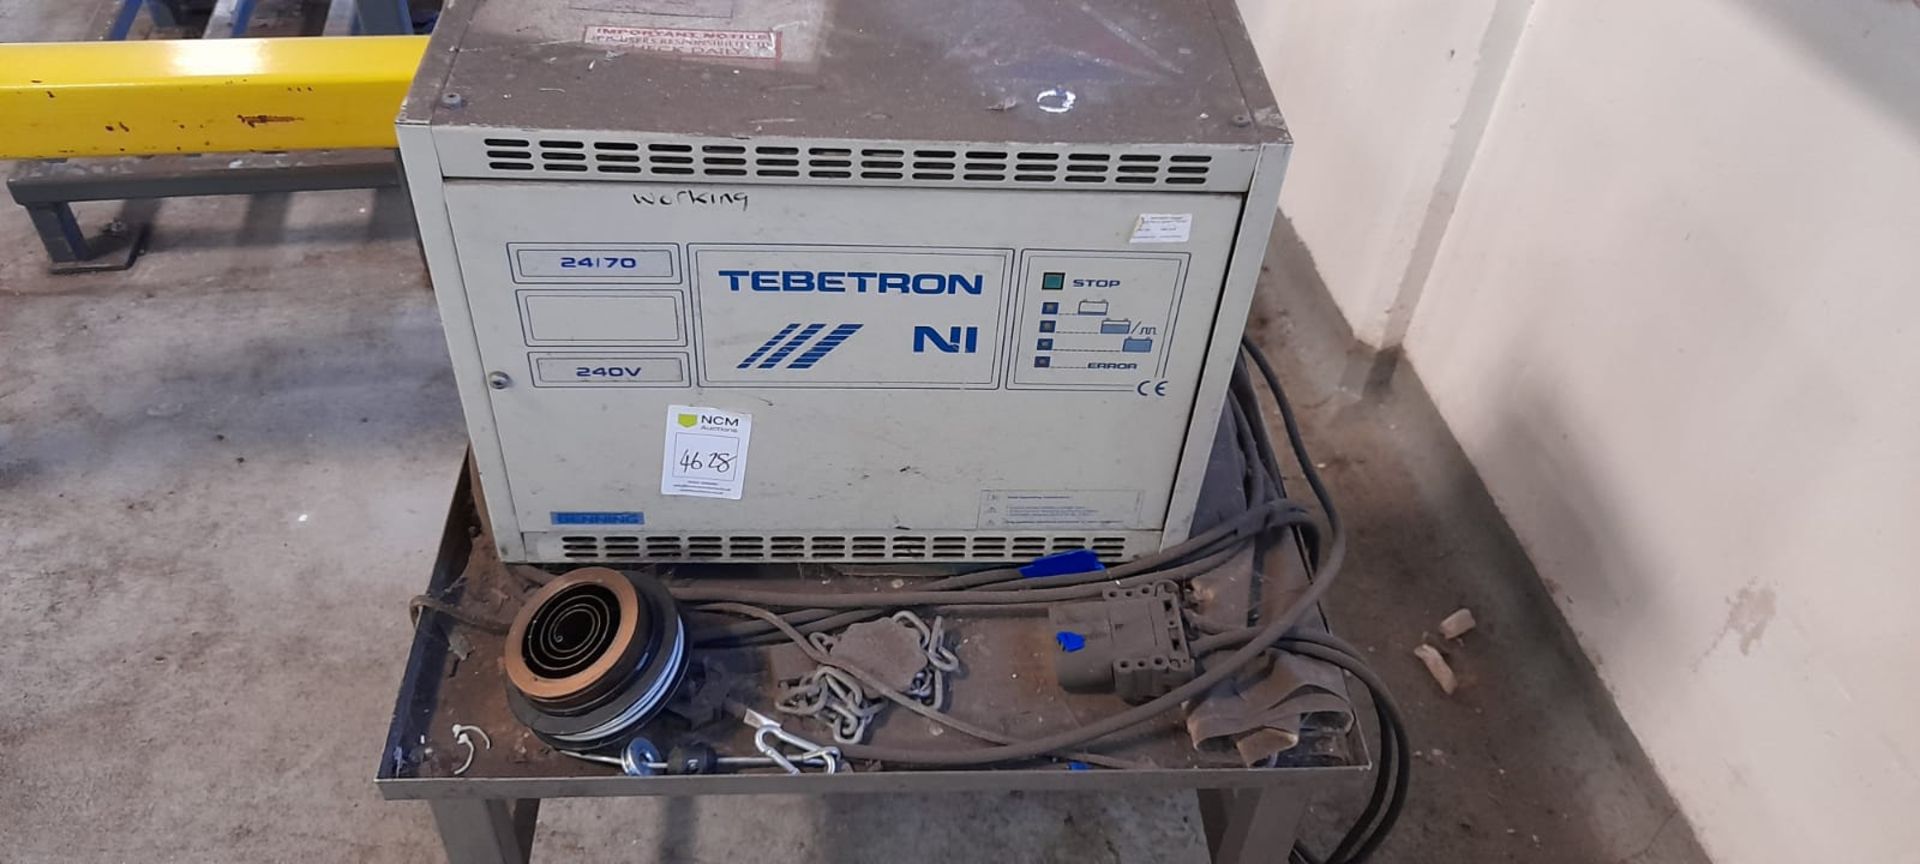 Tebetron Battery charger ni 240v